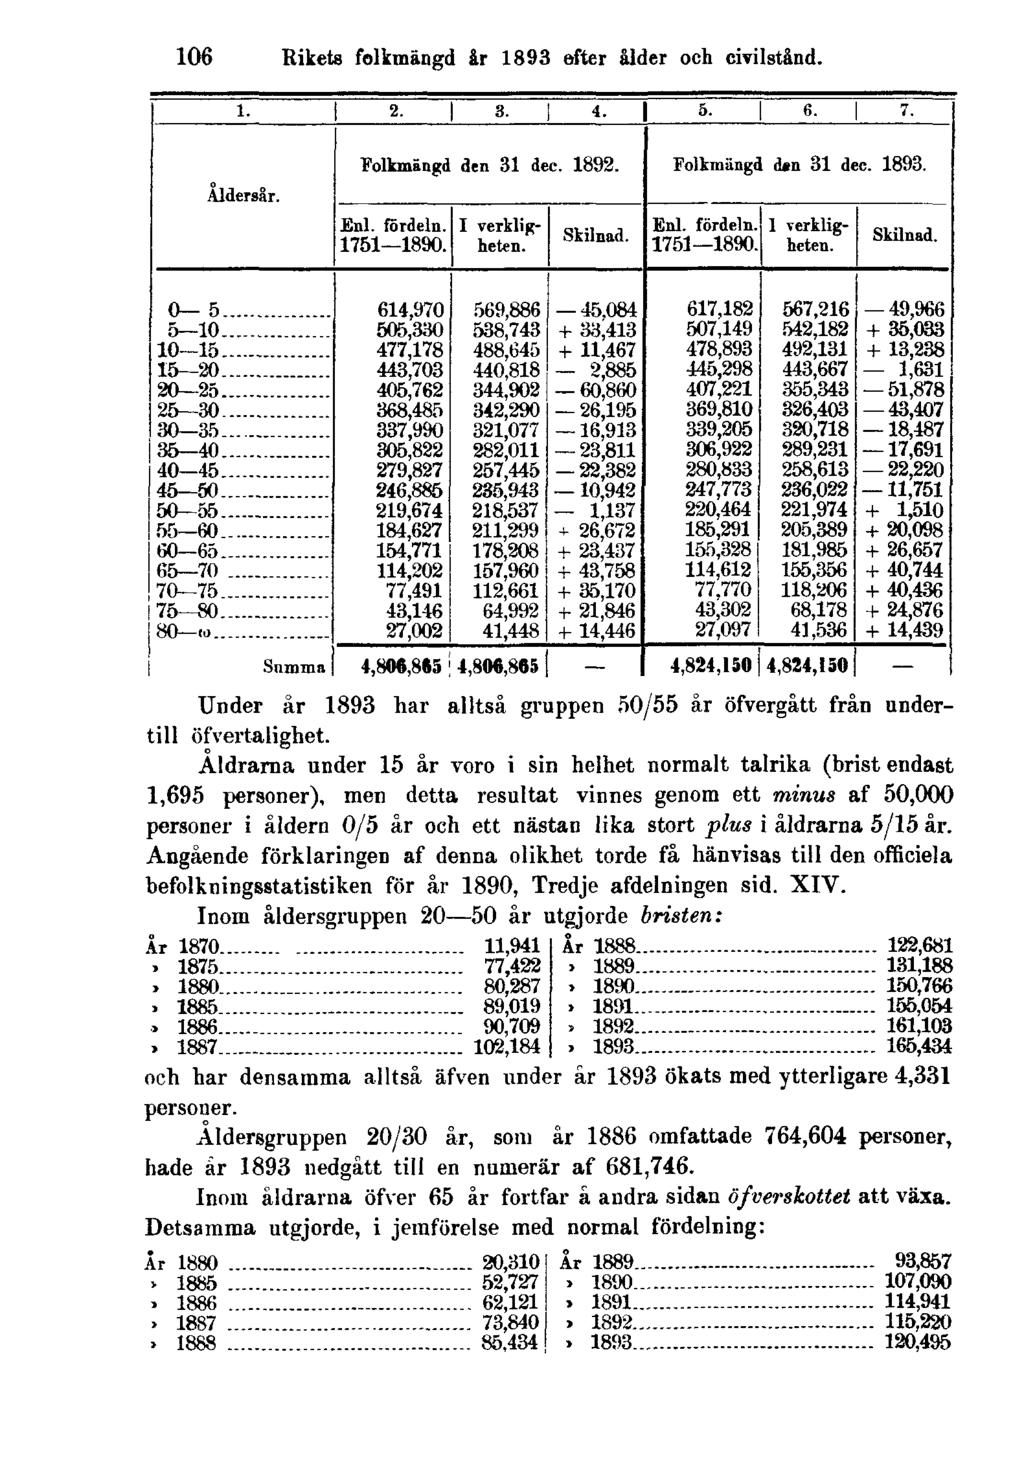 106 Rikets folkmängd år 1893 efter ålder och civilstånd. Under år 1893 har alltså gruppen 50/55 år öfvergått från undertill öfvertalighet.